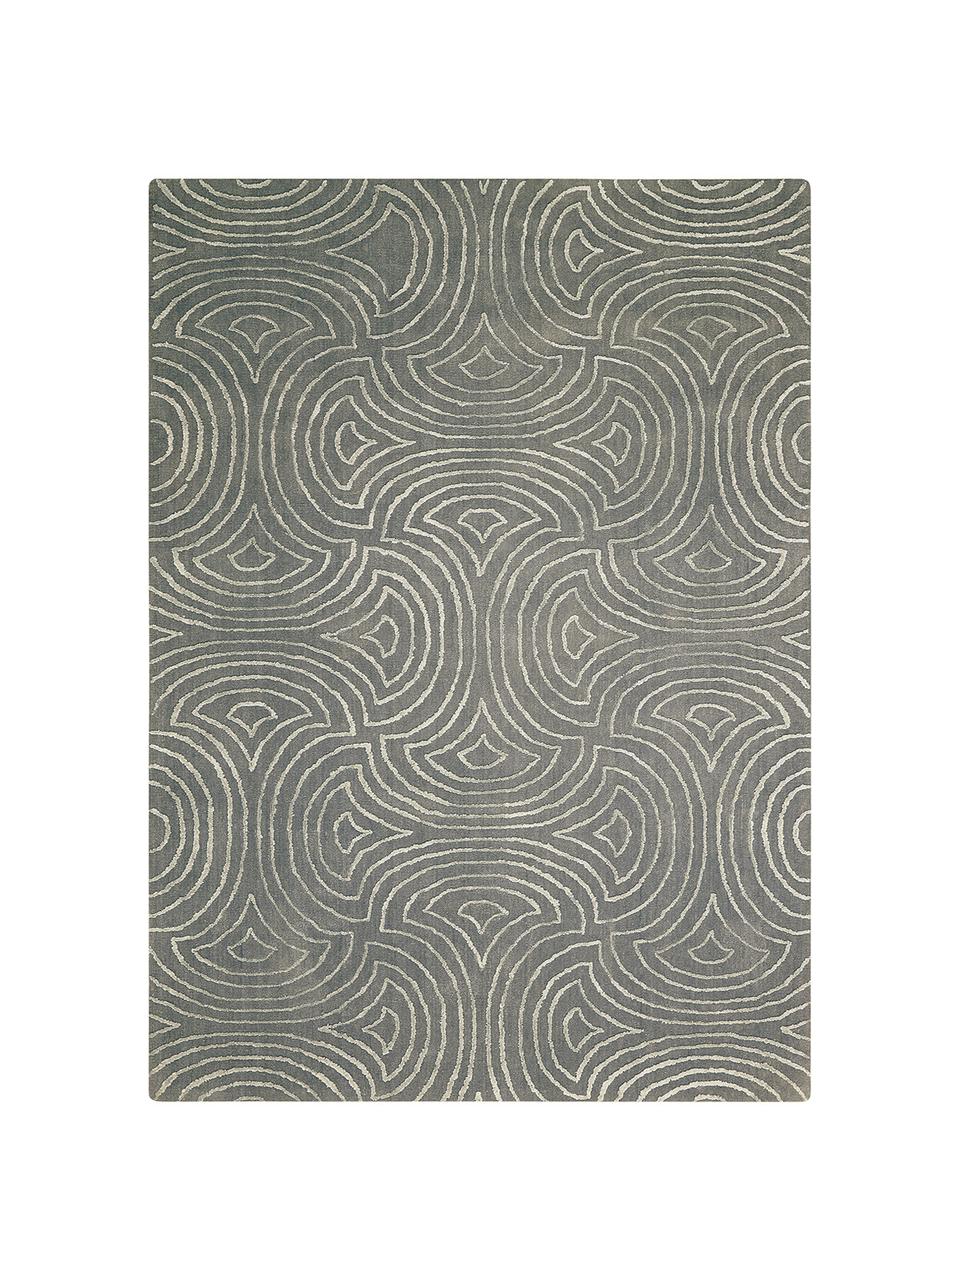 Tappeto taftato a mano Vita Illusion, Retro: cotone, rivestimento in l, Verde muschio, Larg. 150 x Lung. 215 cm (taglia M)